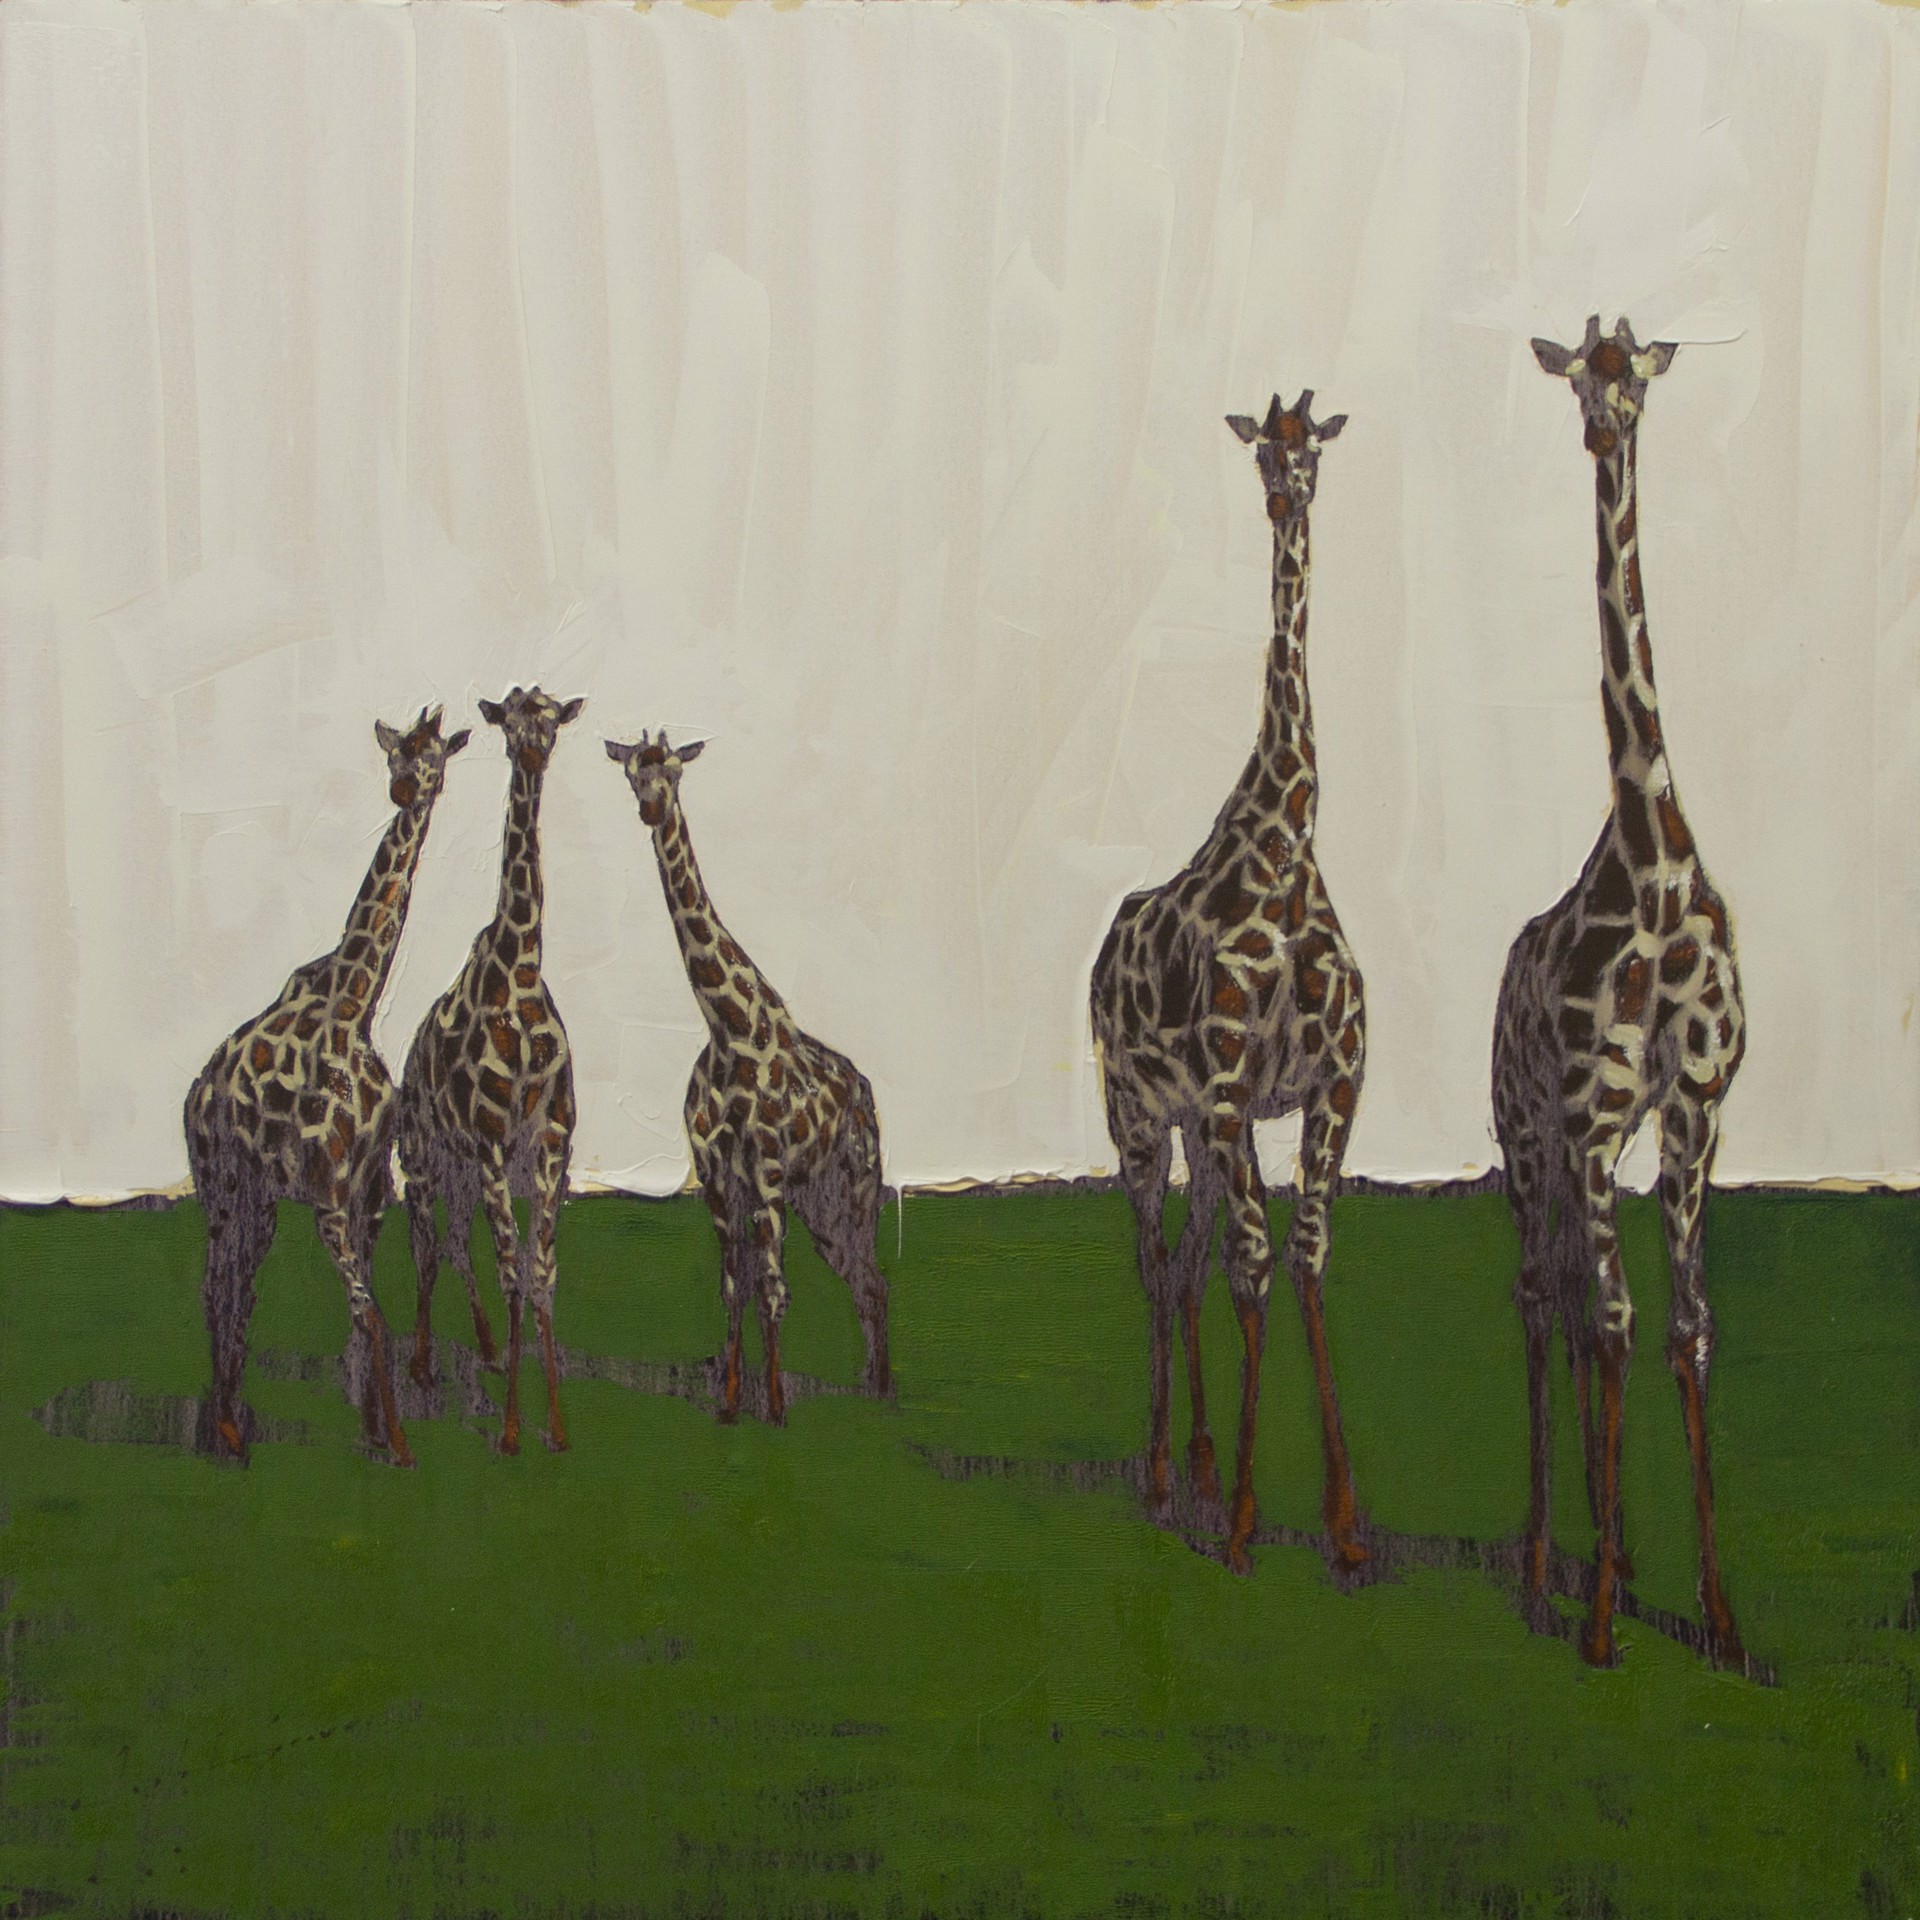 Giraffe In The Field by Josh Brown